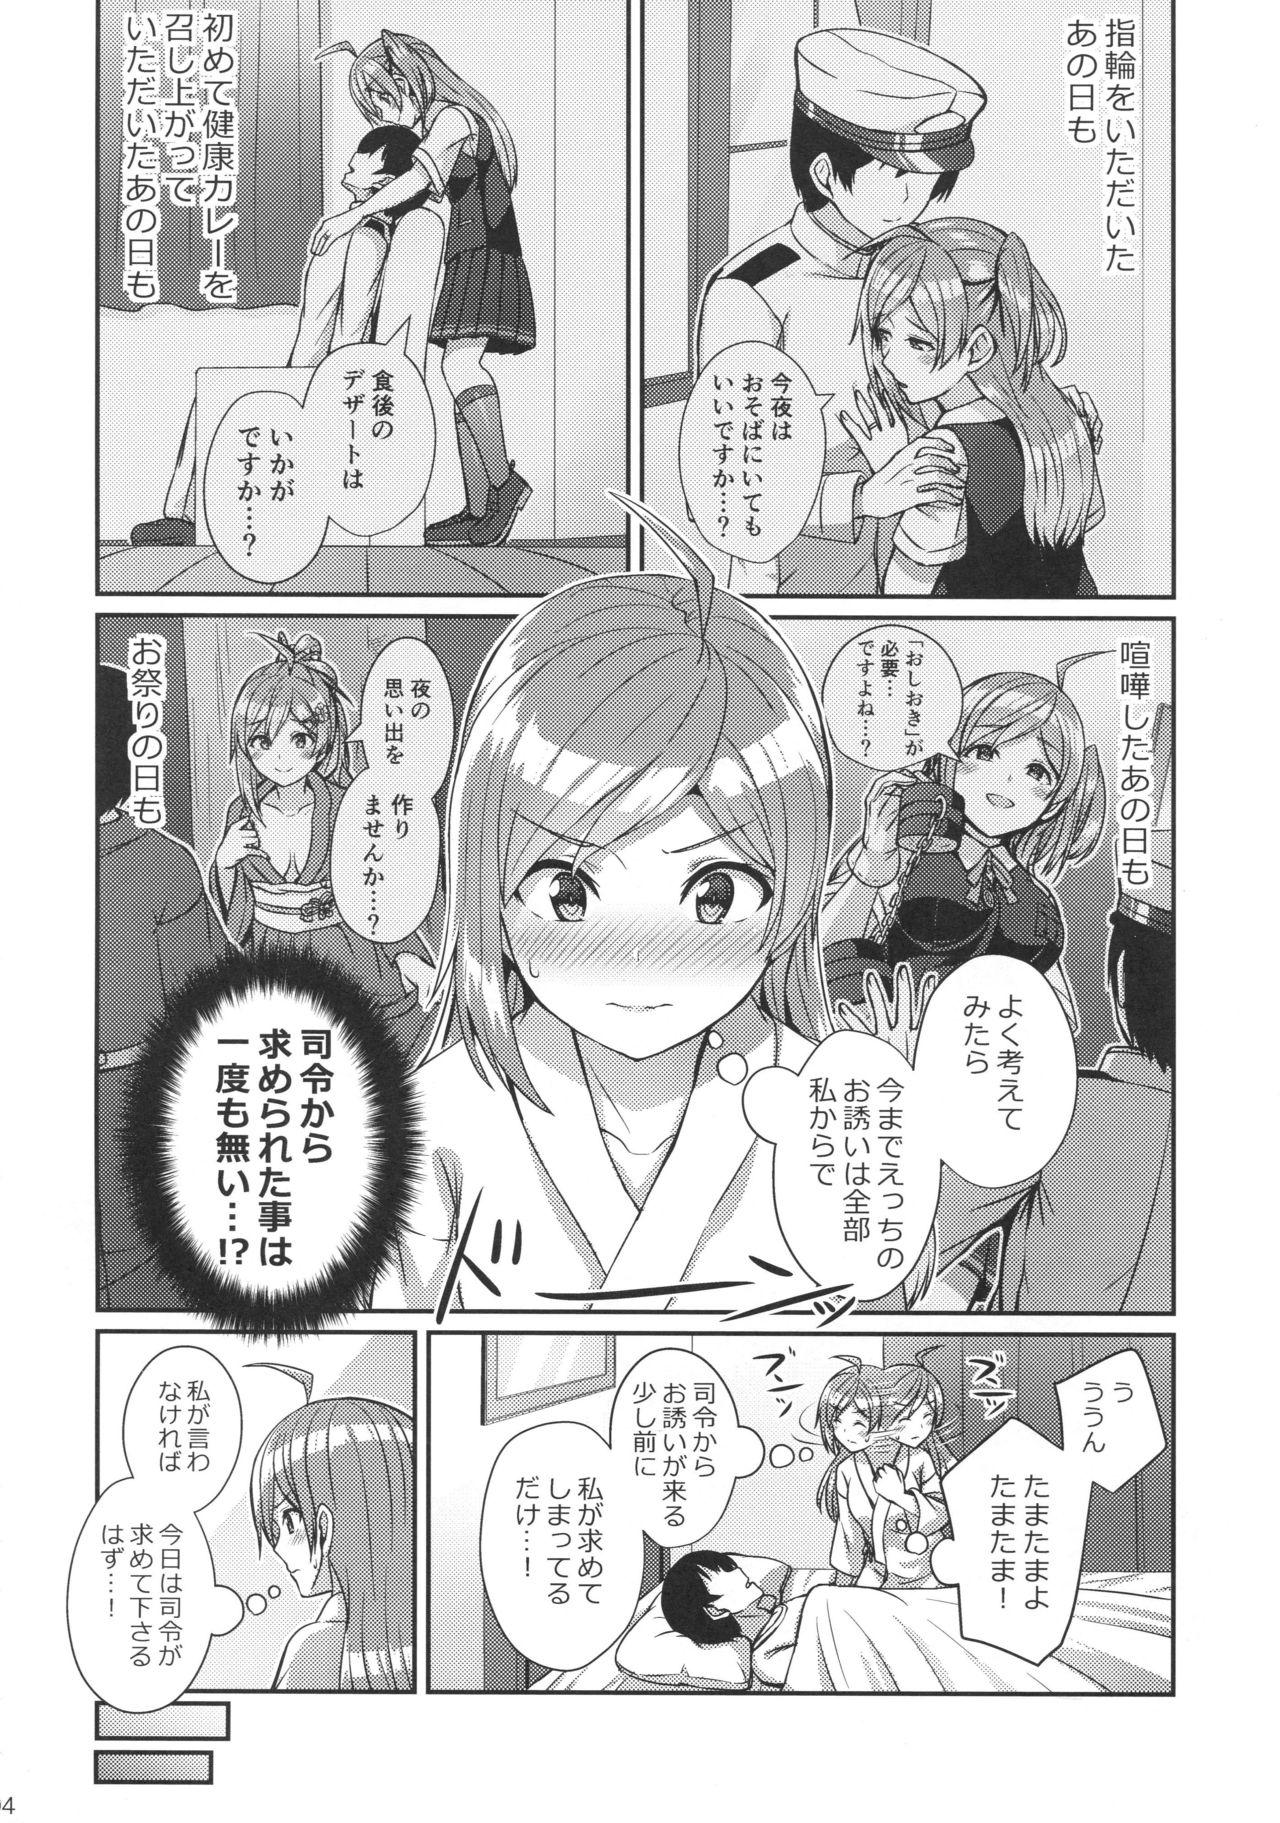 Stretch Hagikaze wo Aishite Hoshii desu. - Kantai collection Cougar - Page 3